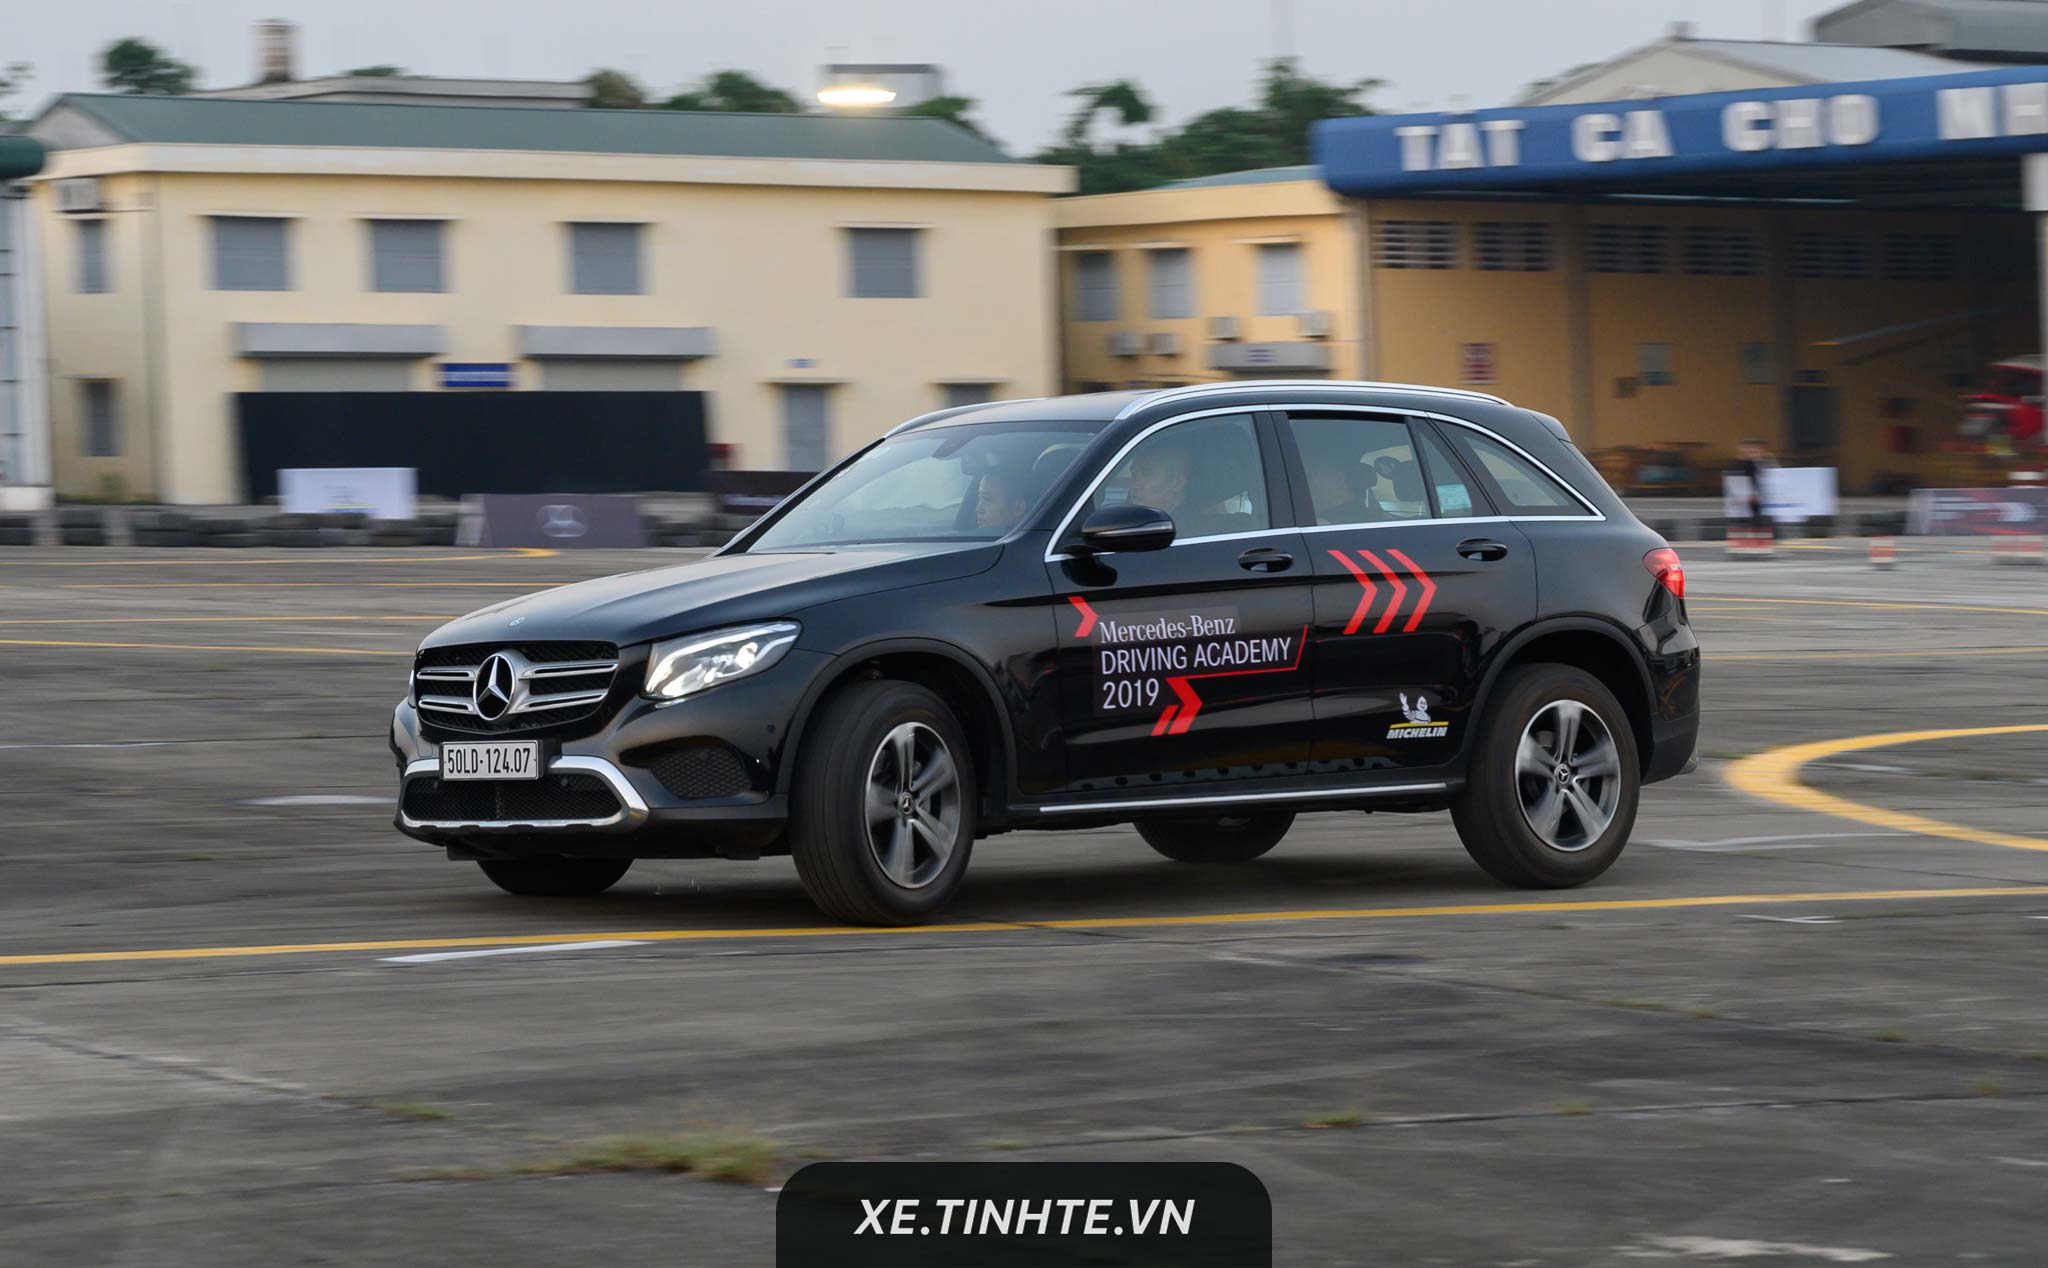 Trải nghiệm những tính năng hỗ trợ người lái trong đêm tại Mercedes-Benz Driving Academy 2019